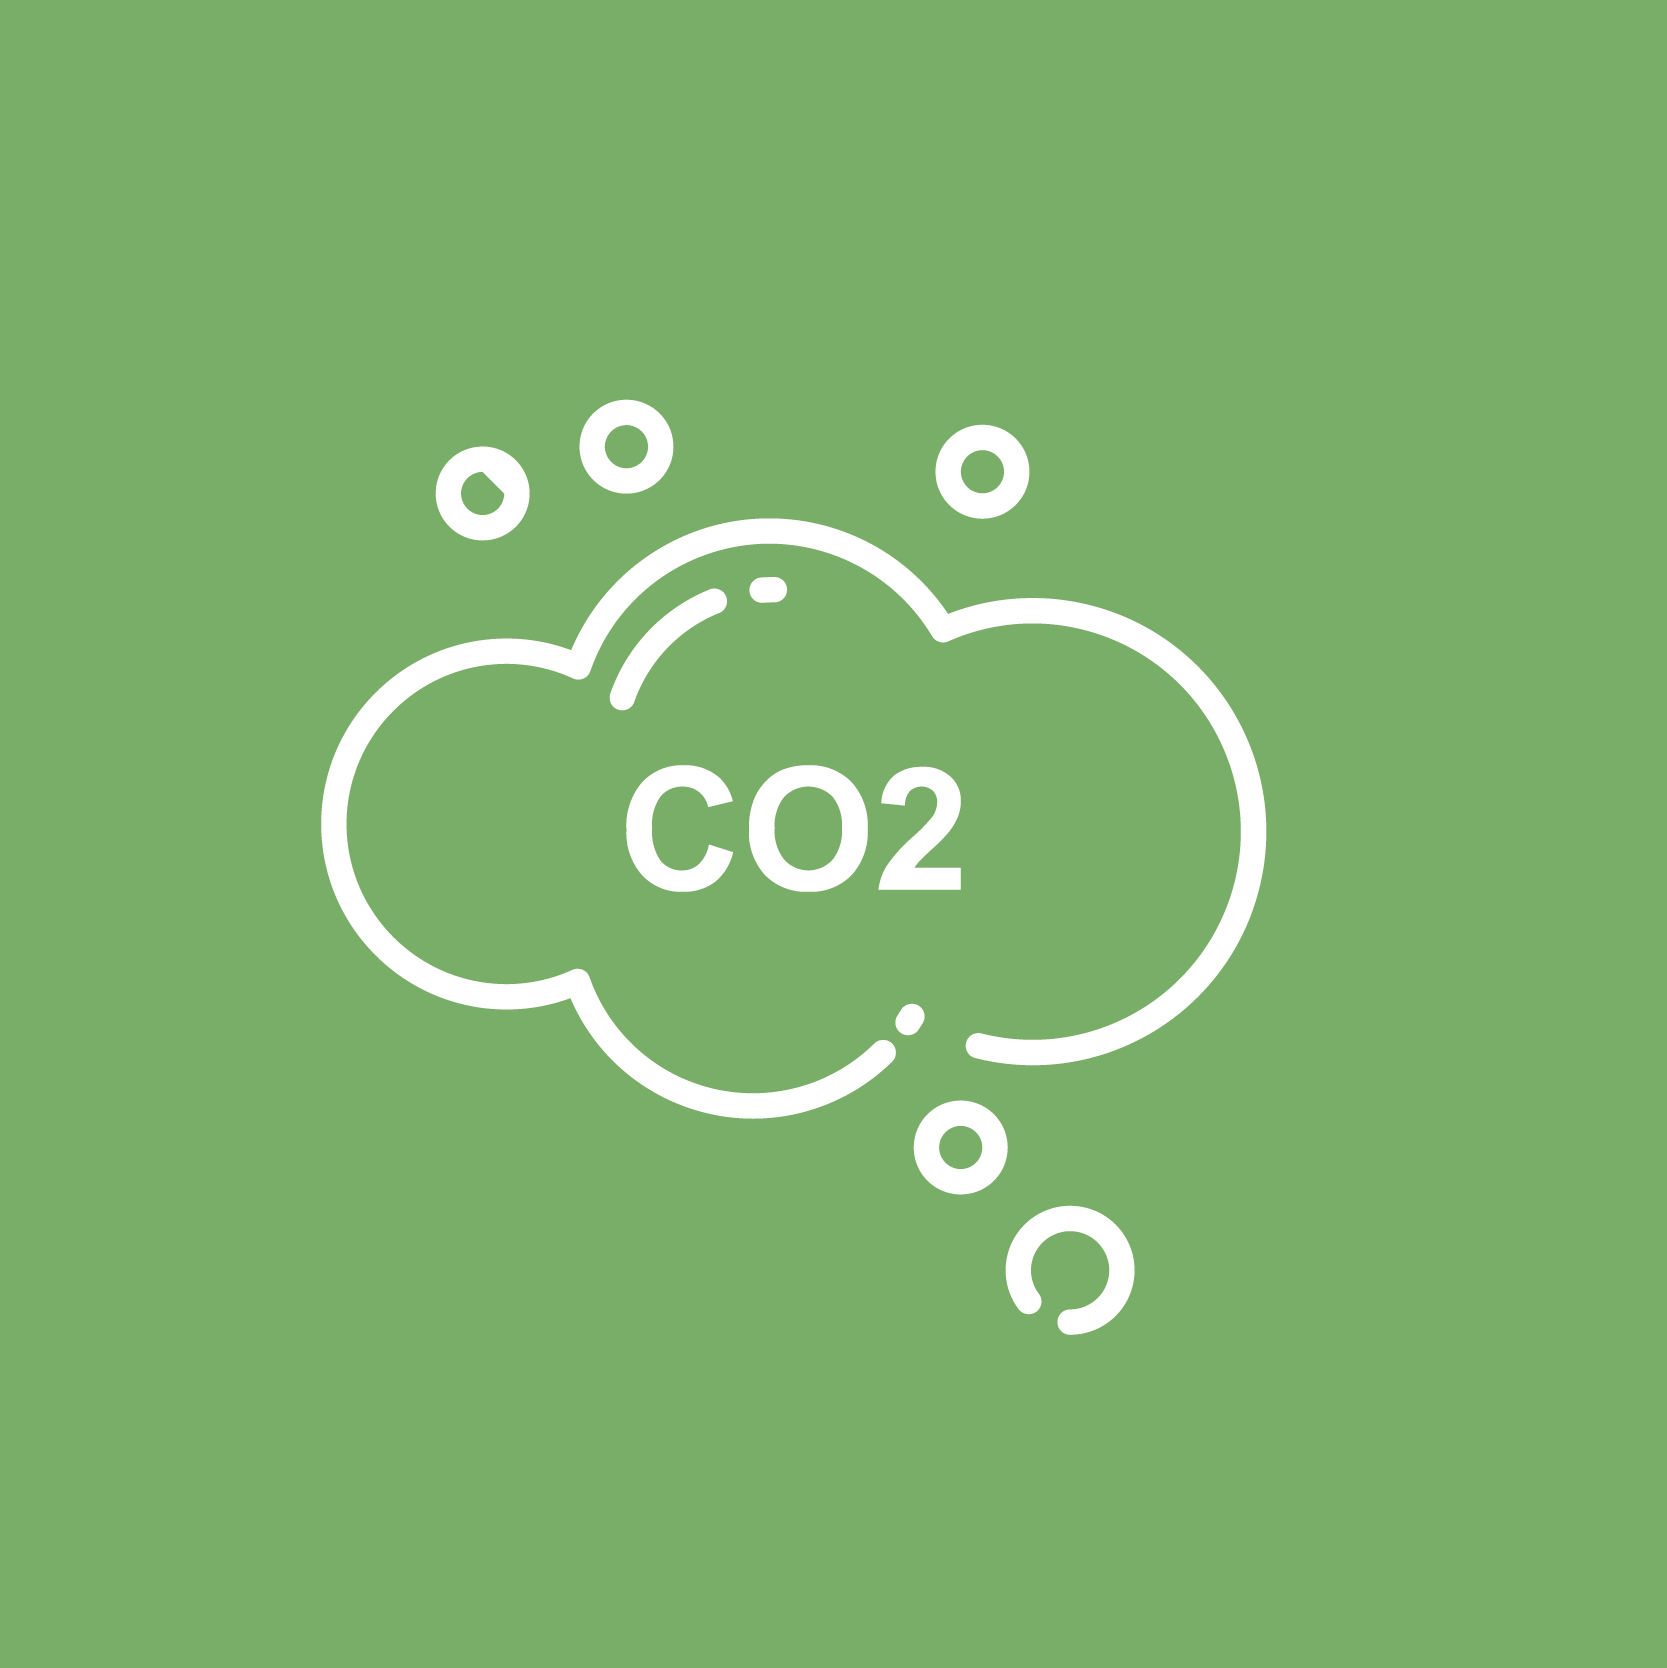 CO2-vastlegging door agroforestry praktijken.